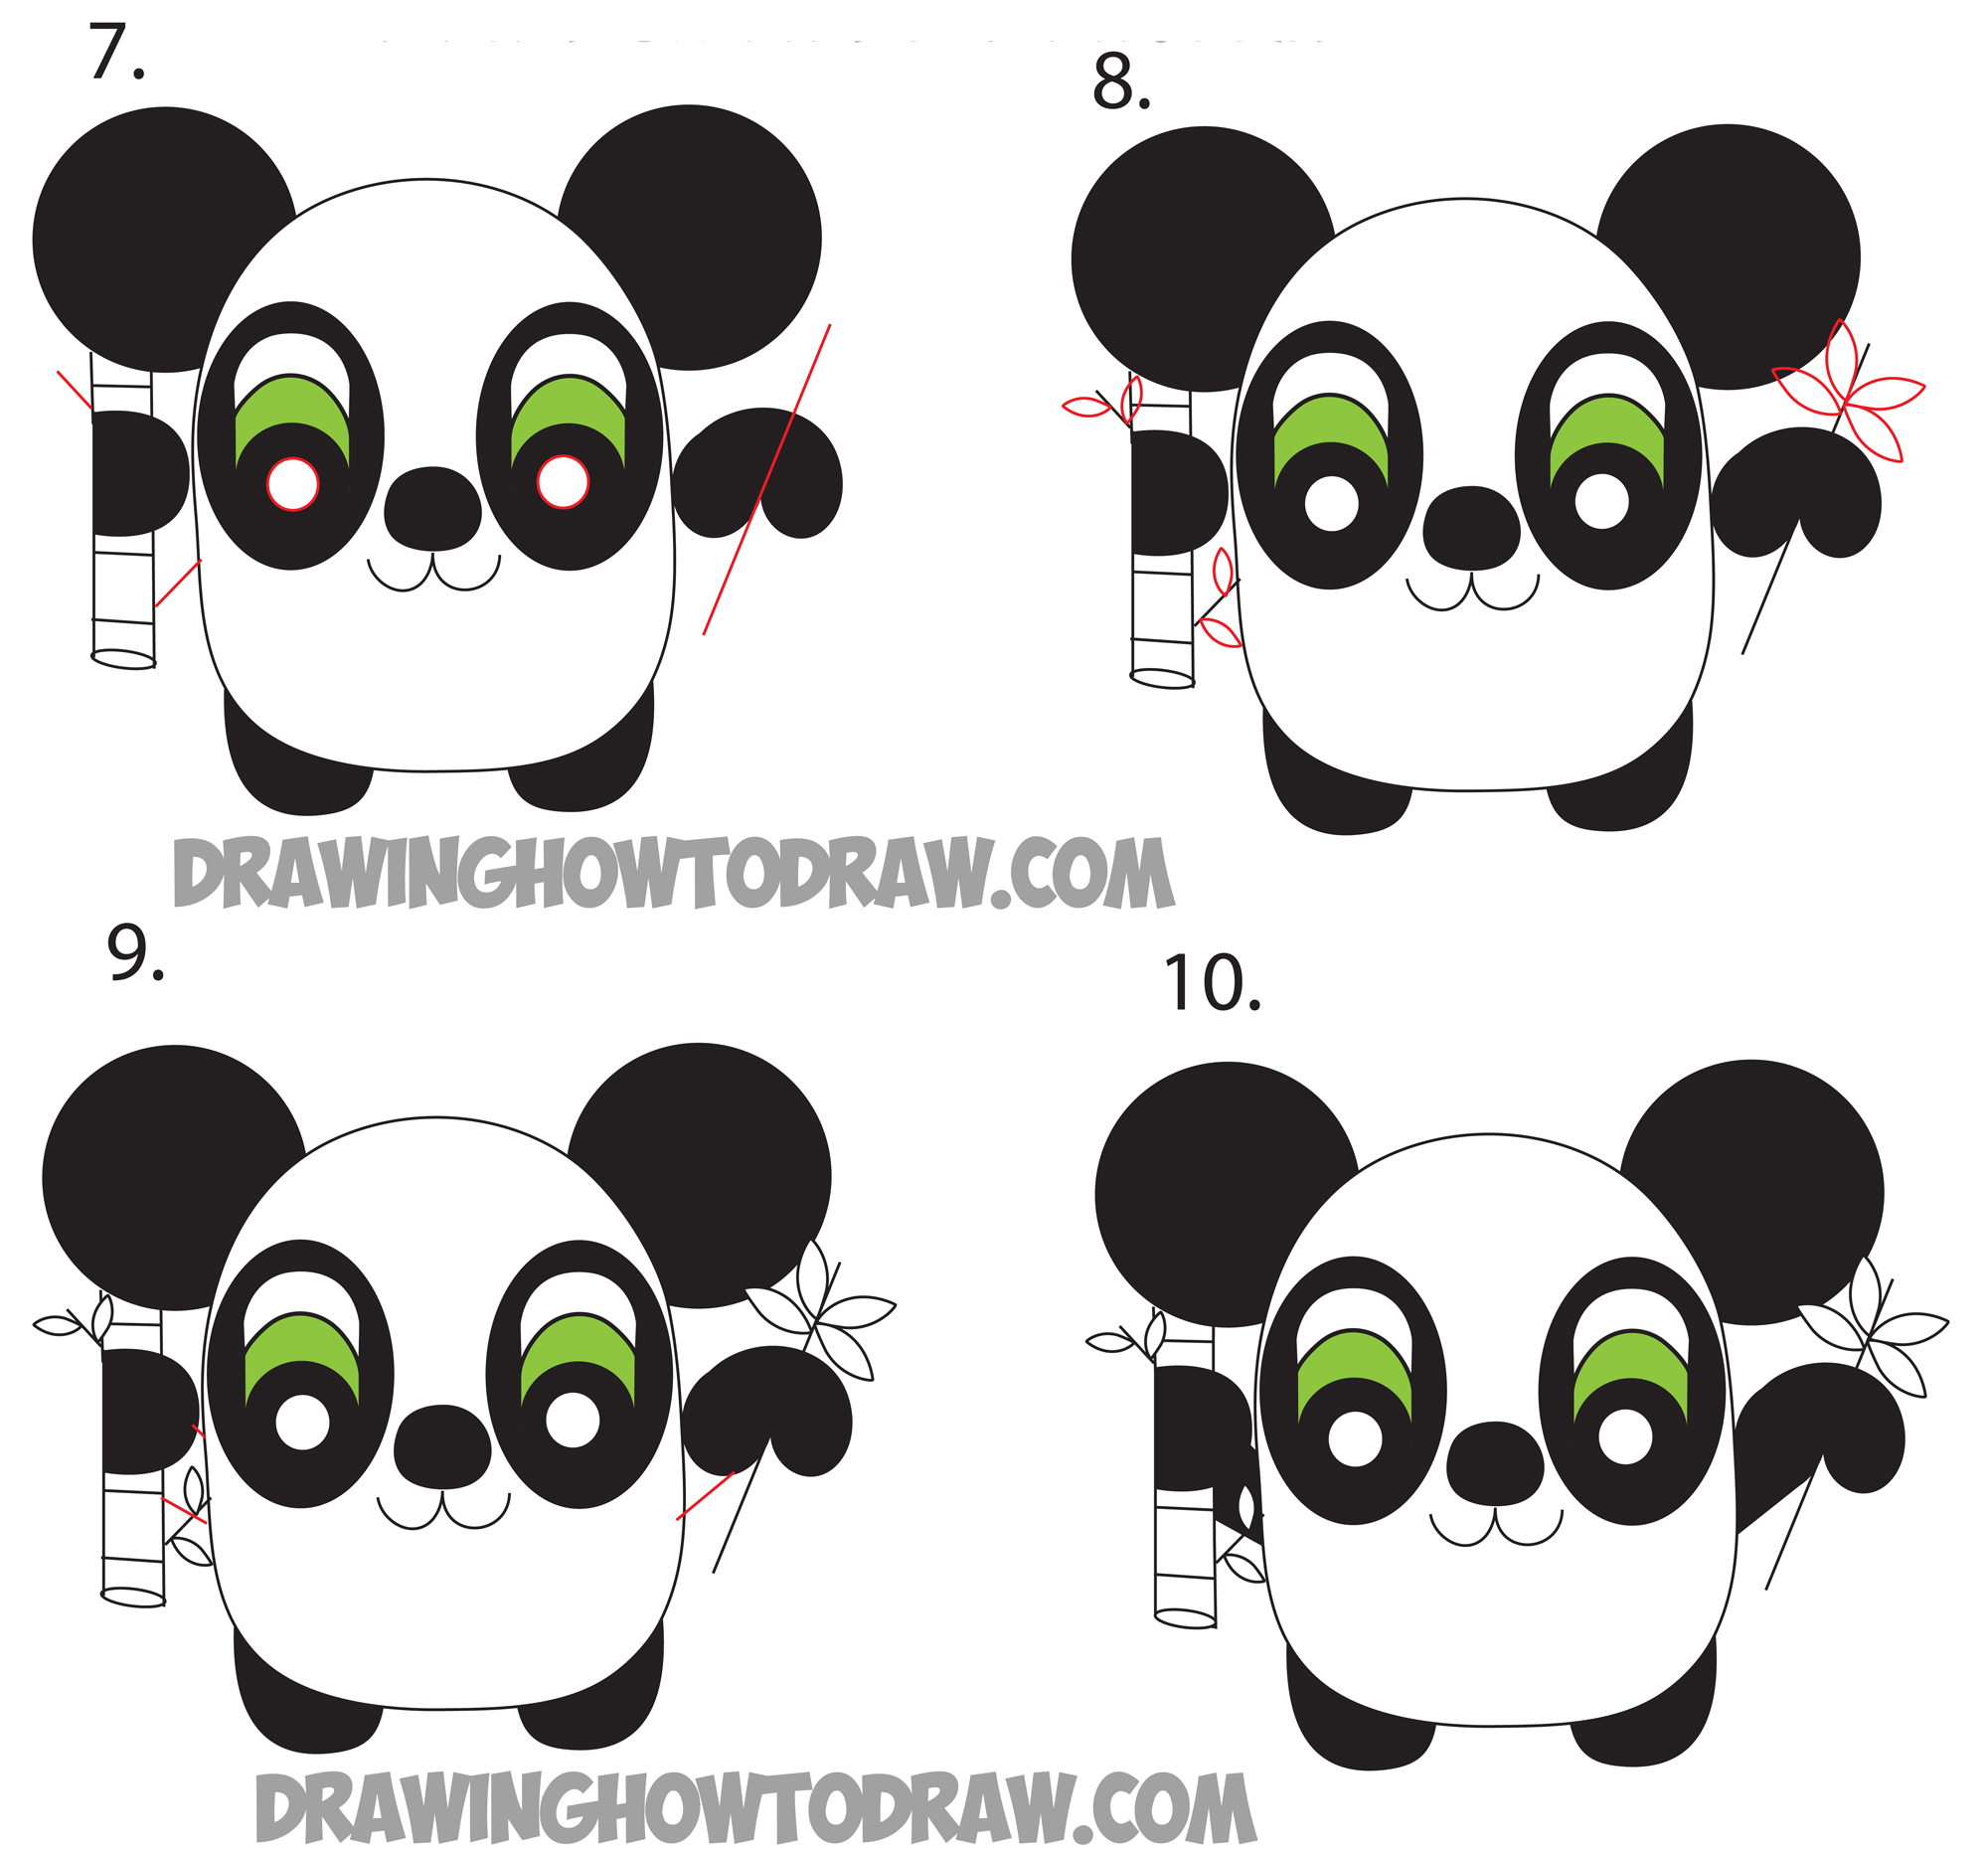 A cute panda eating bamboo